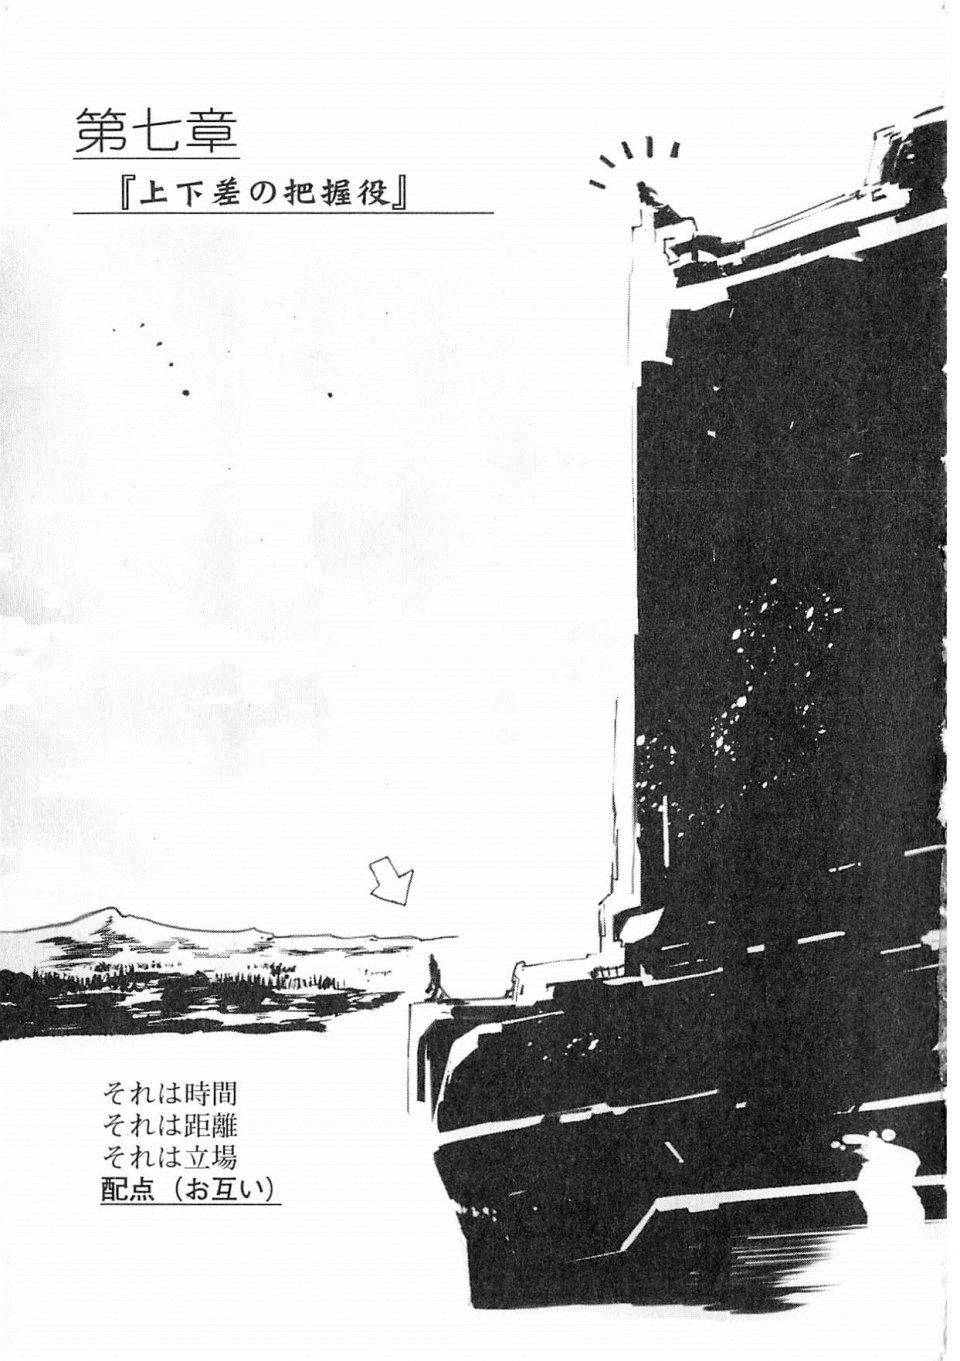 Kyoukai Senjou no Horizon LN Vol 19(8A) - Photo #203